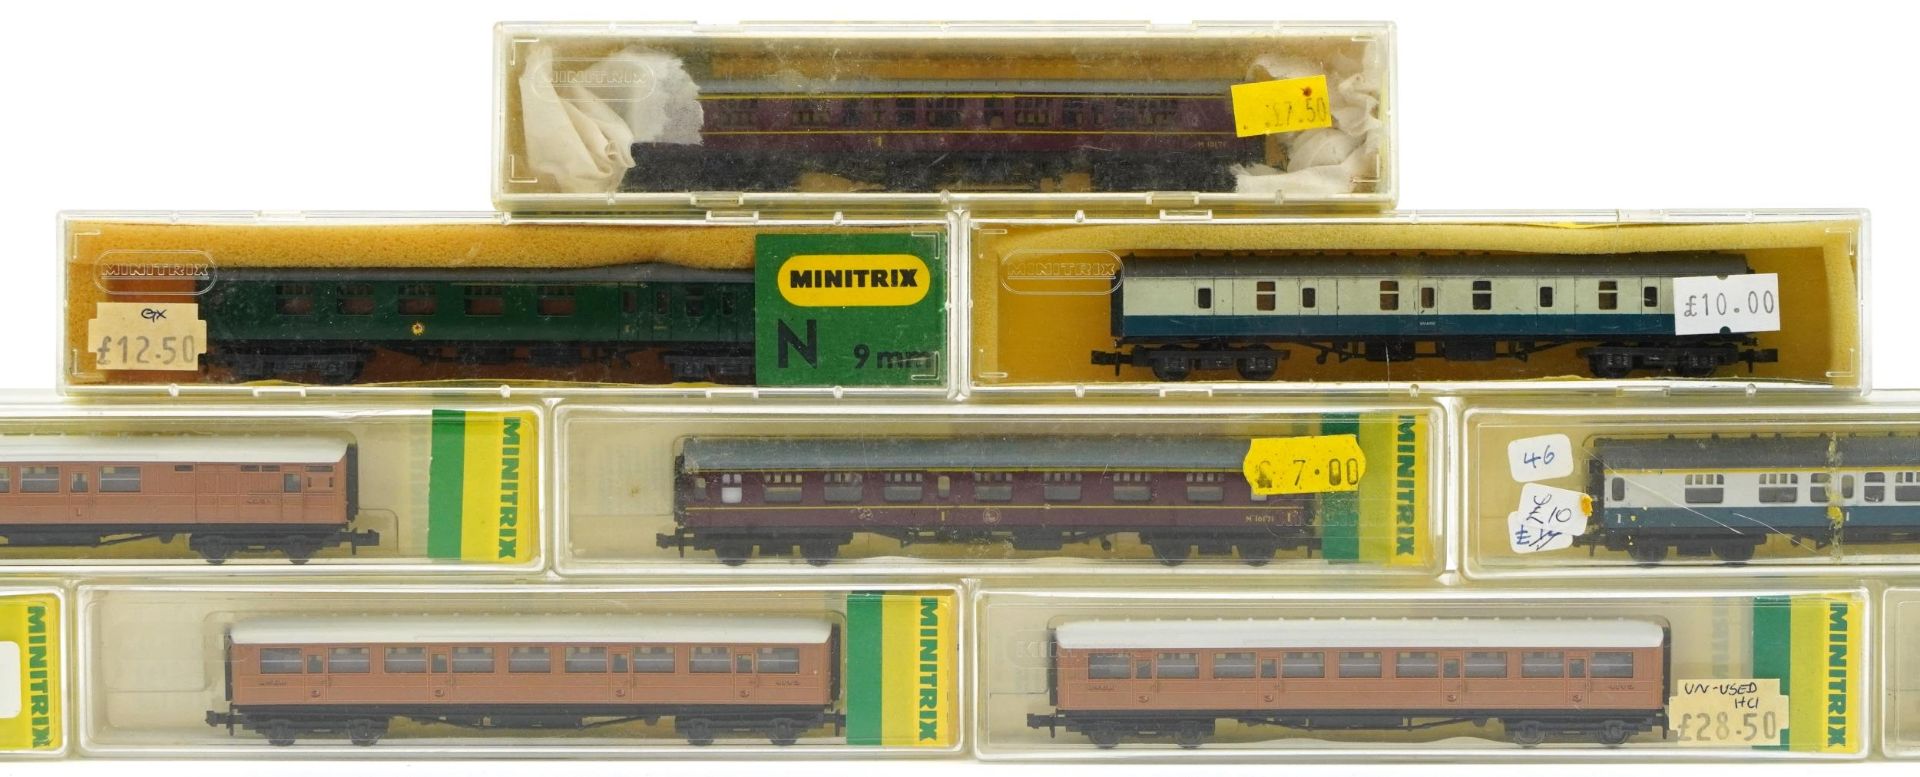 Ten Minitrix N gauge model railway carriages with cases, numbers 2926, 2938, 3112, 13003, 13008, - Bild 3 aus 5